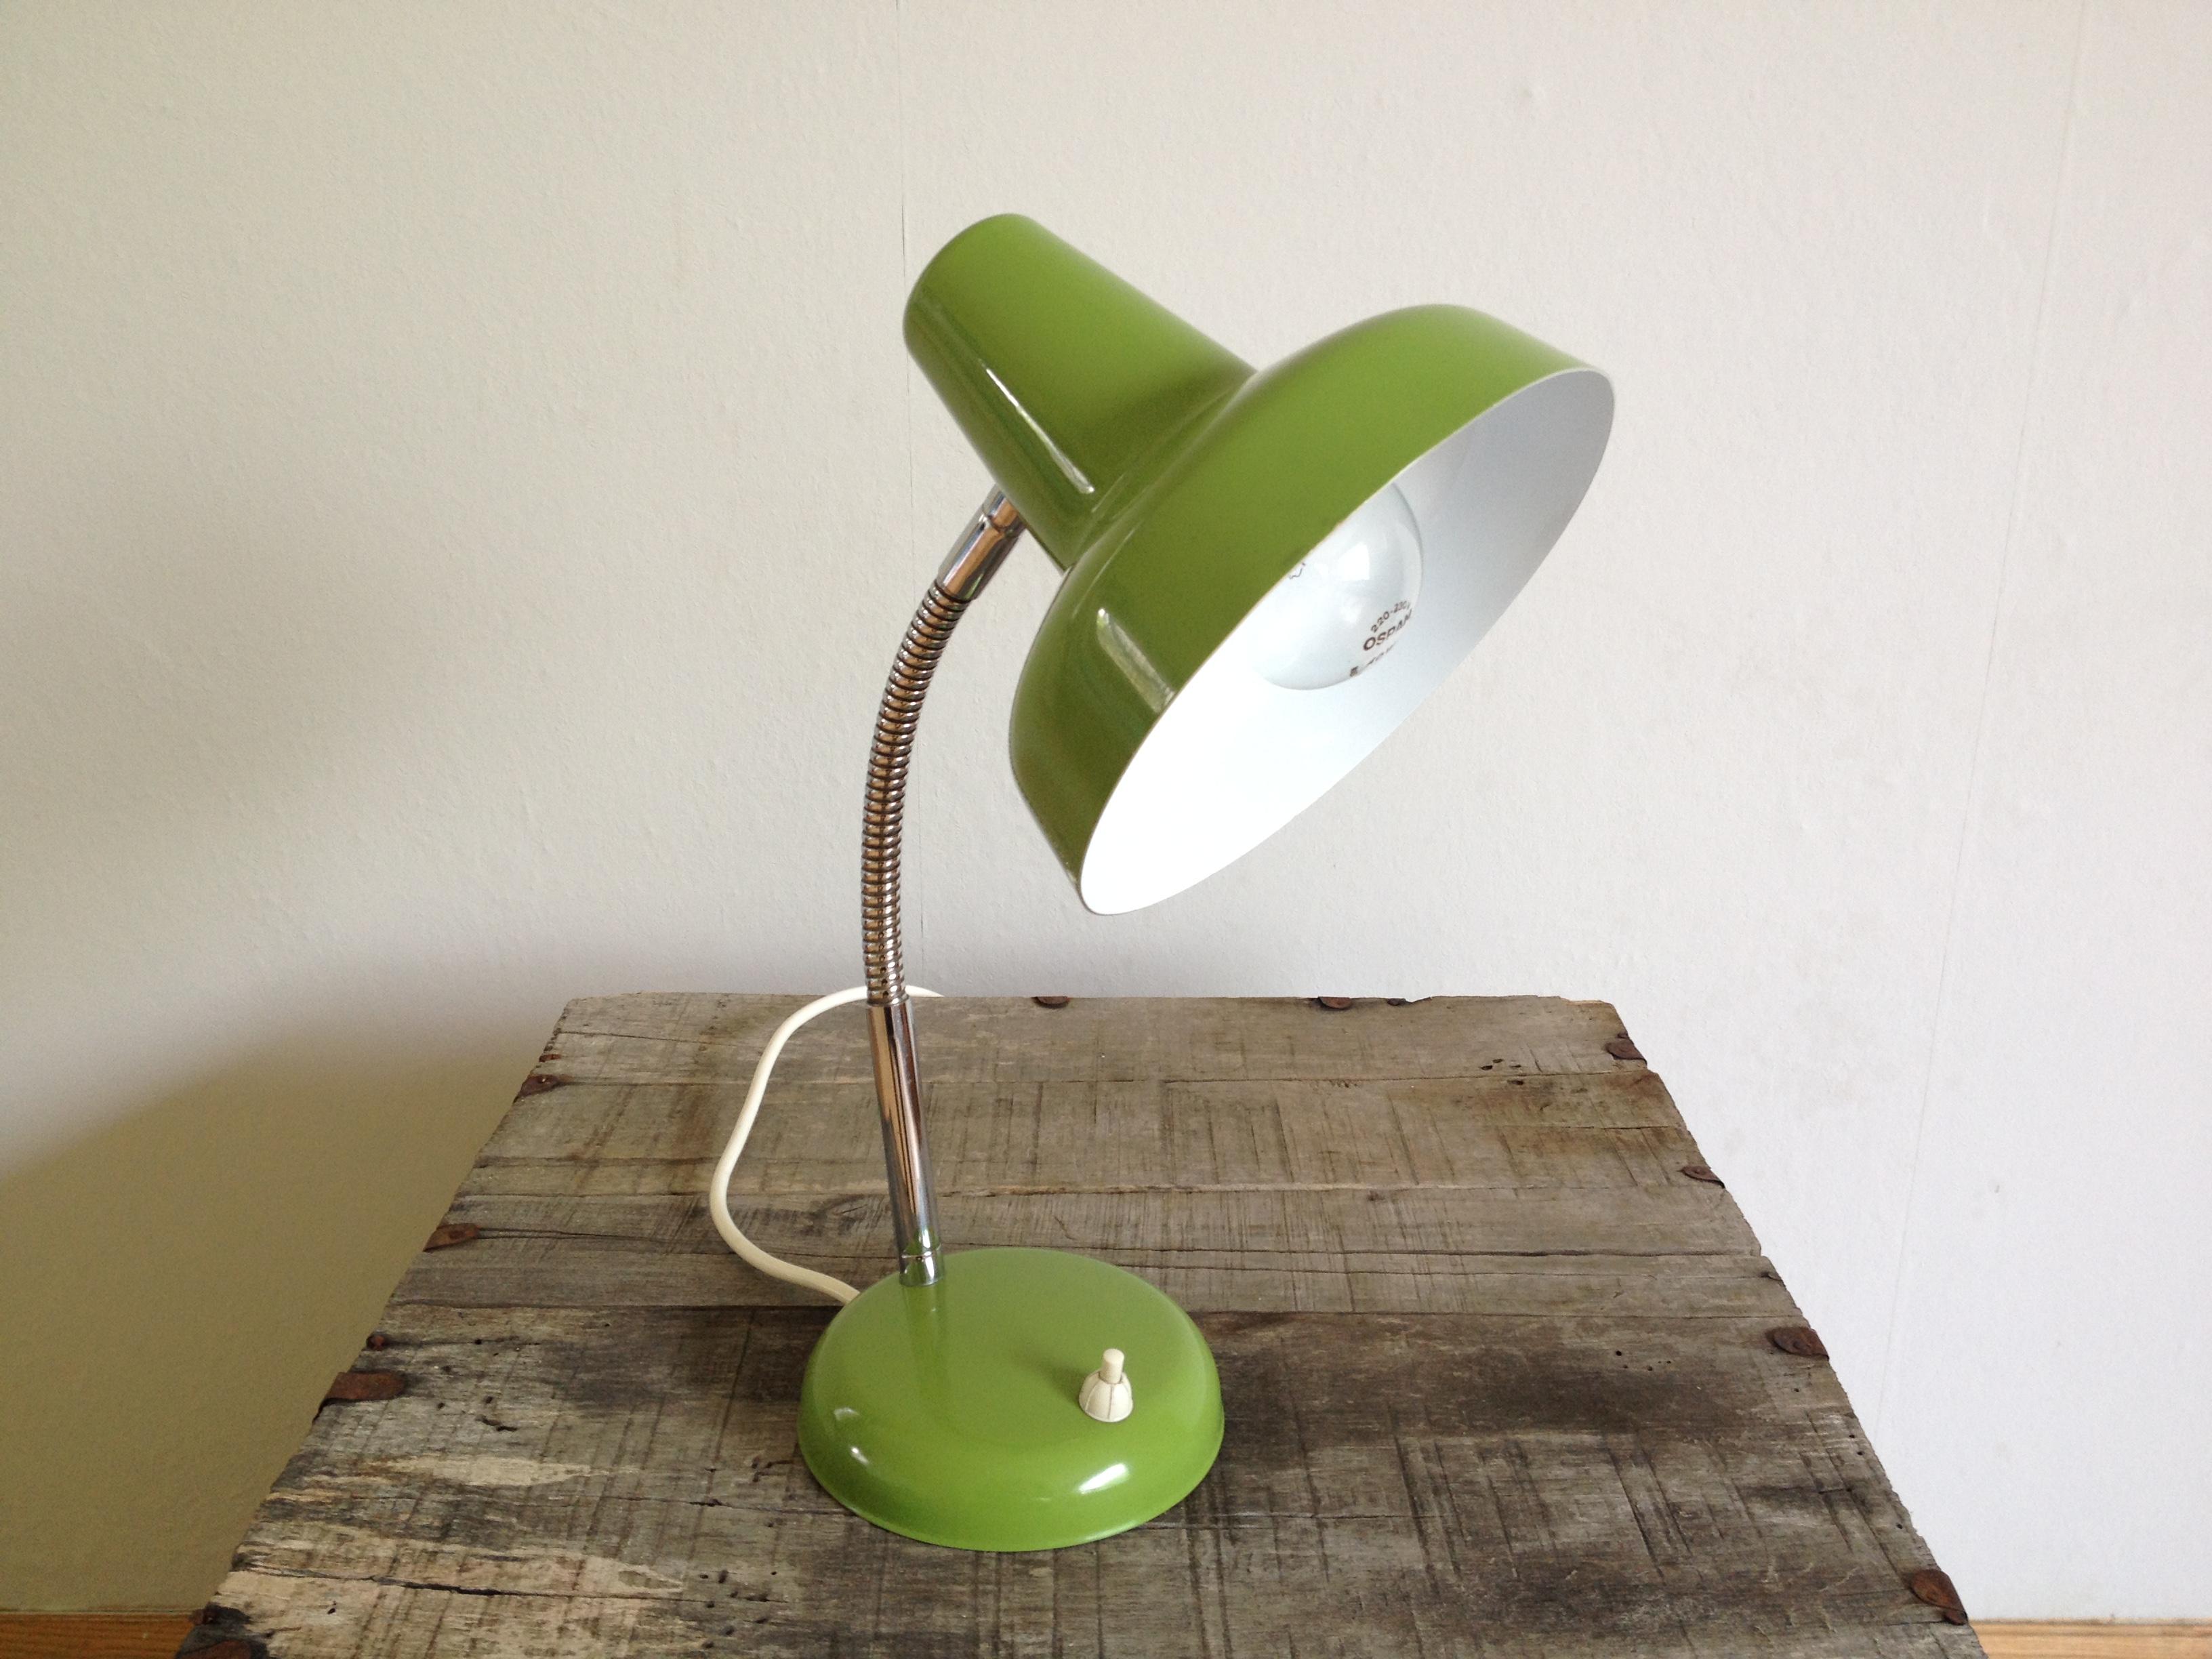 Flexible Lampe in typischer 70er Farbe, h 35 cm, Ø Schirm 17 cm, Bodenplatte fehlt, funktionsfähig